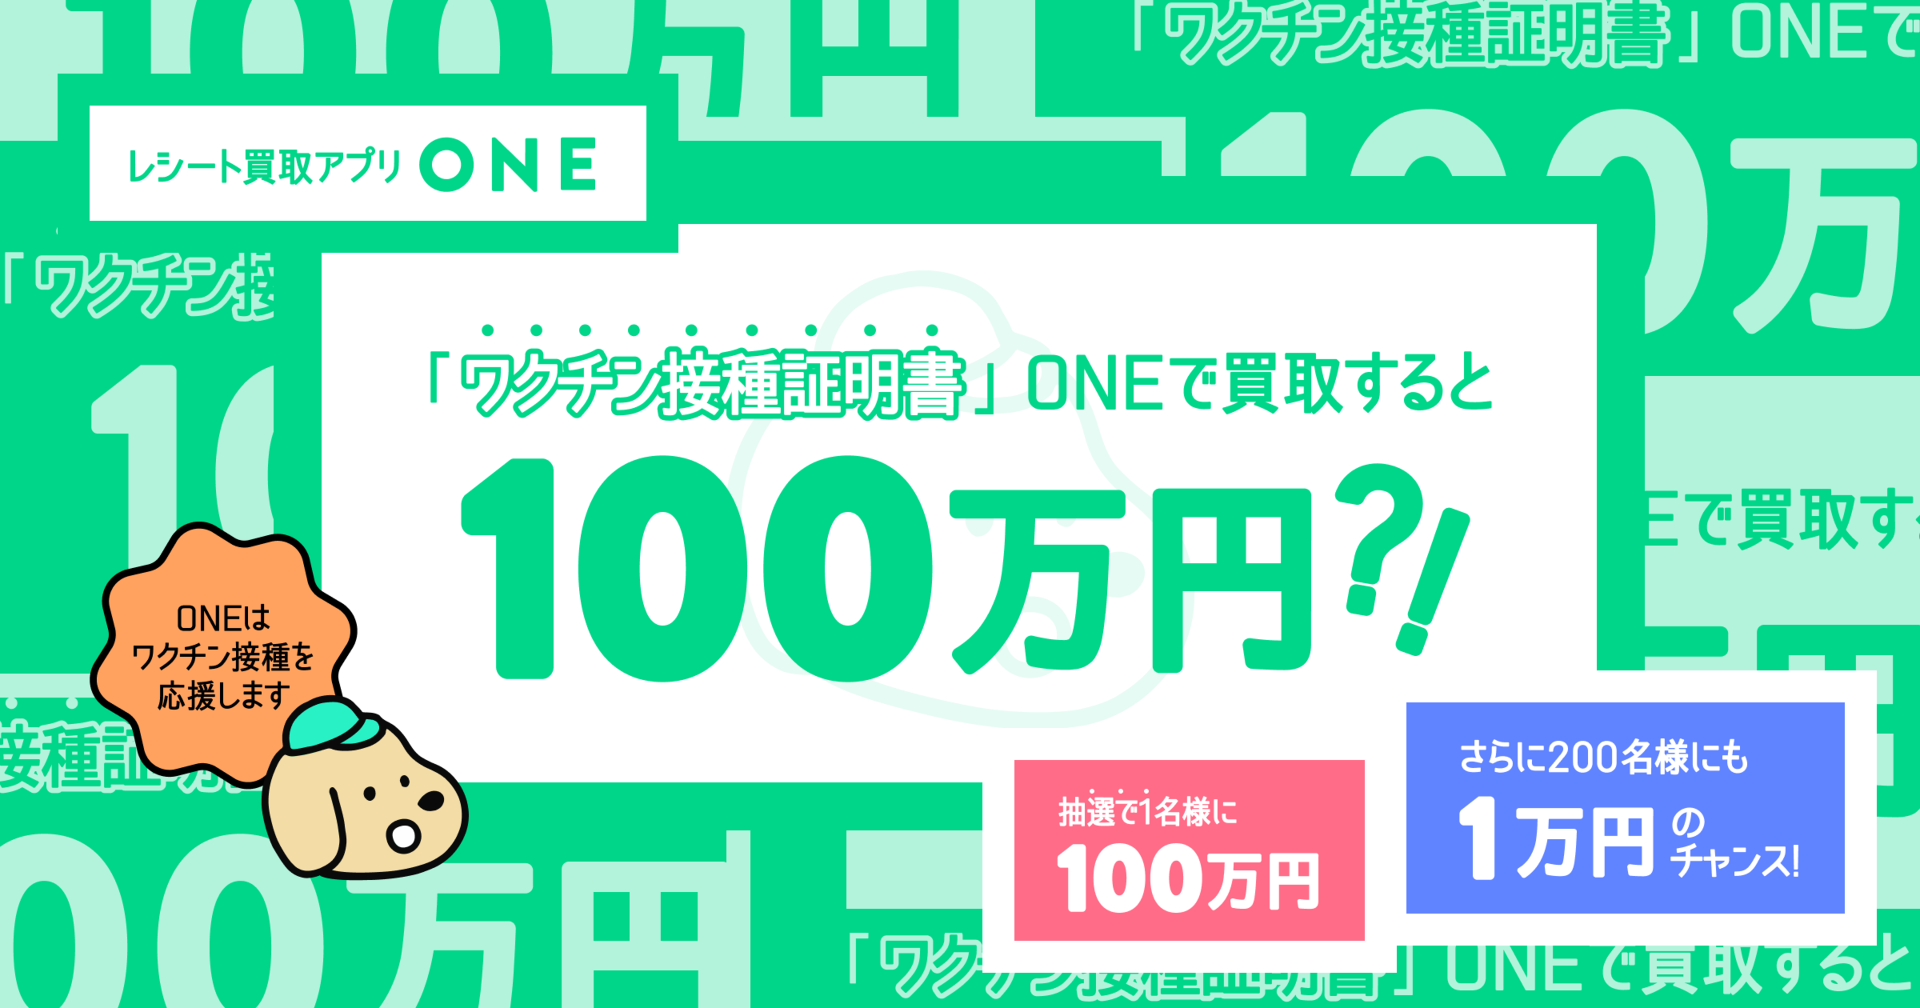 レシート買い取りアプリ「ONE」、ワクチン接種証明書をアップロードした人に最大100万円プレゼント